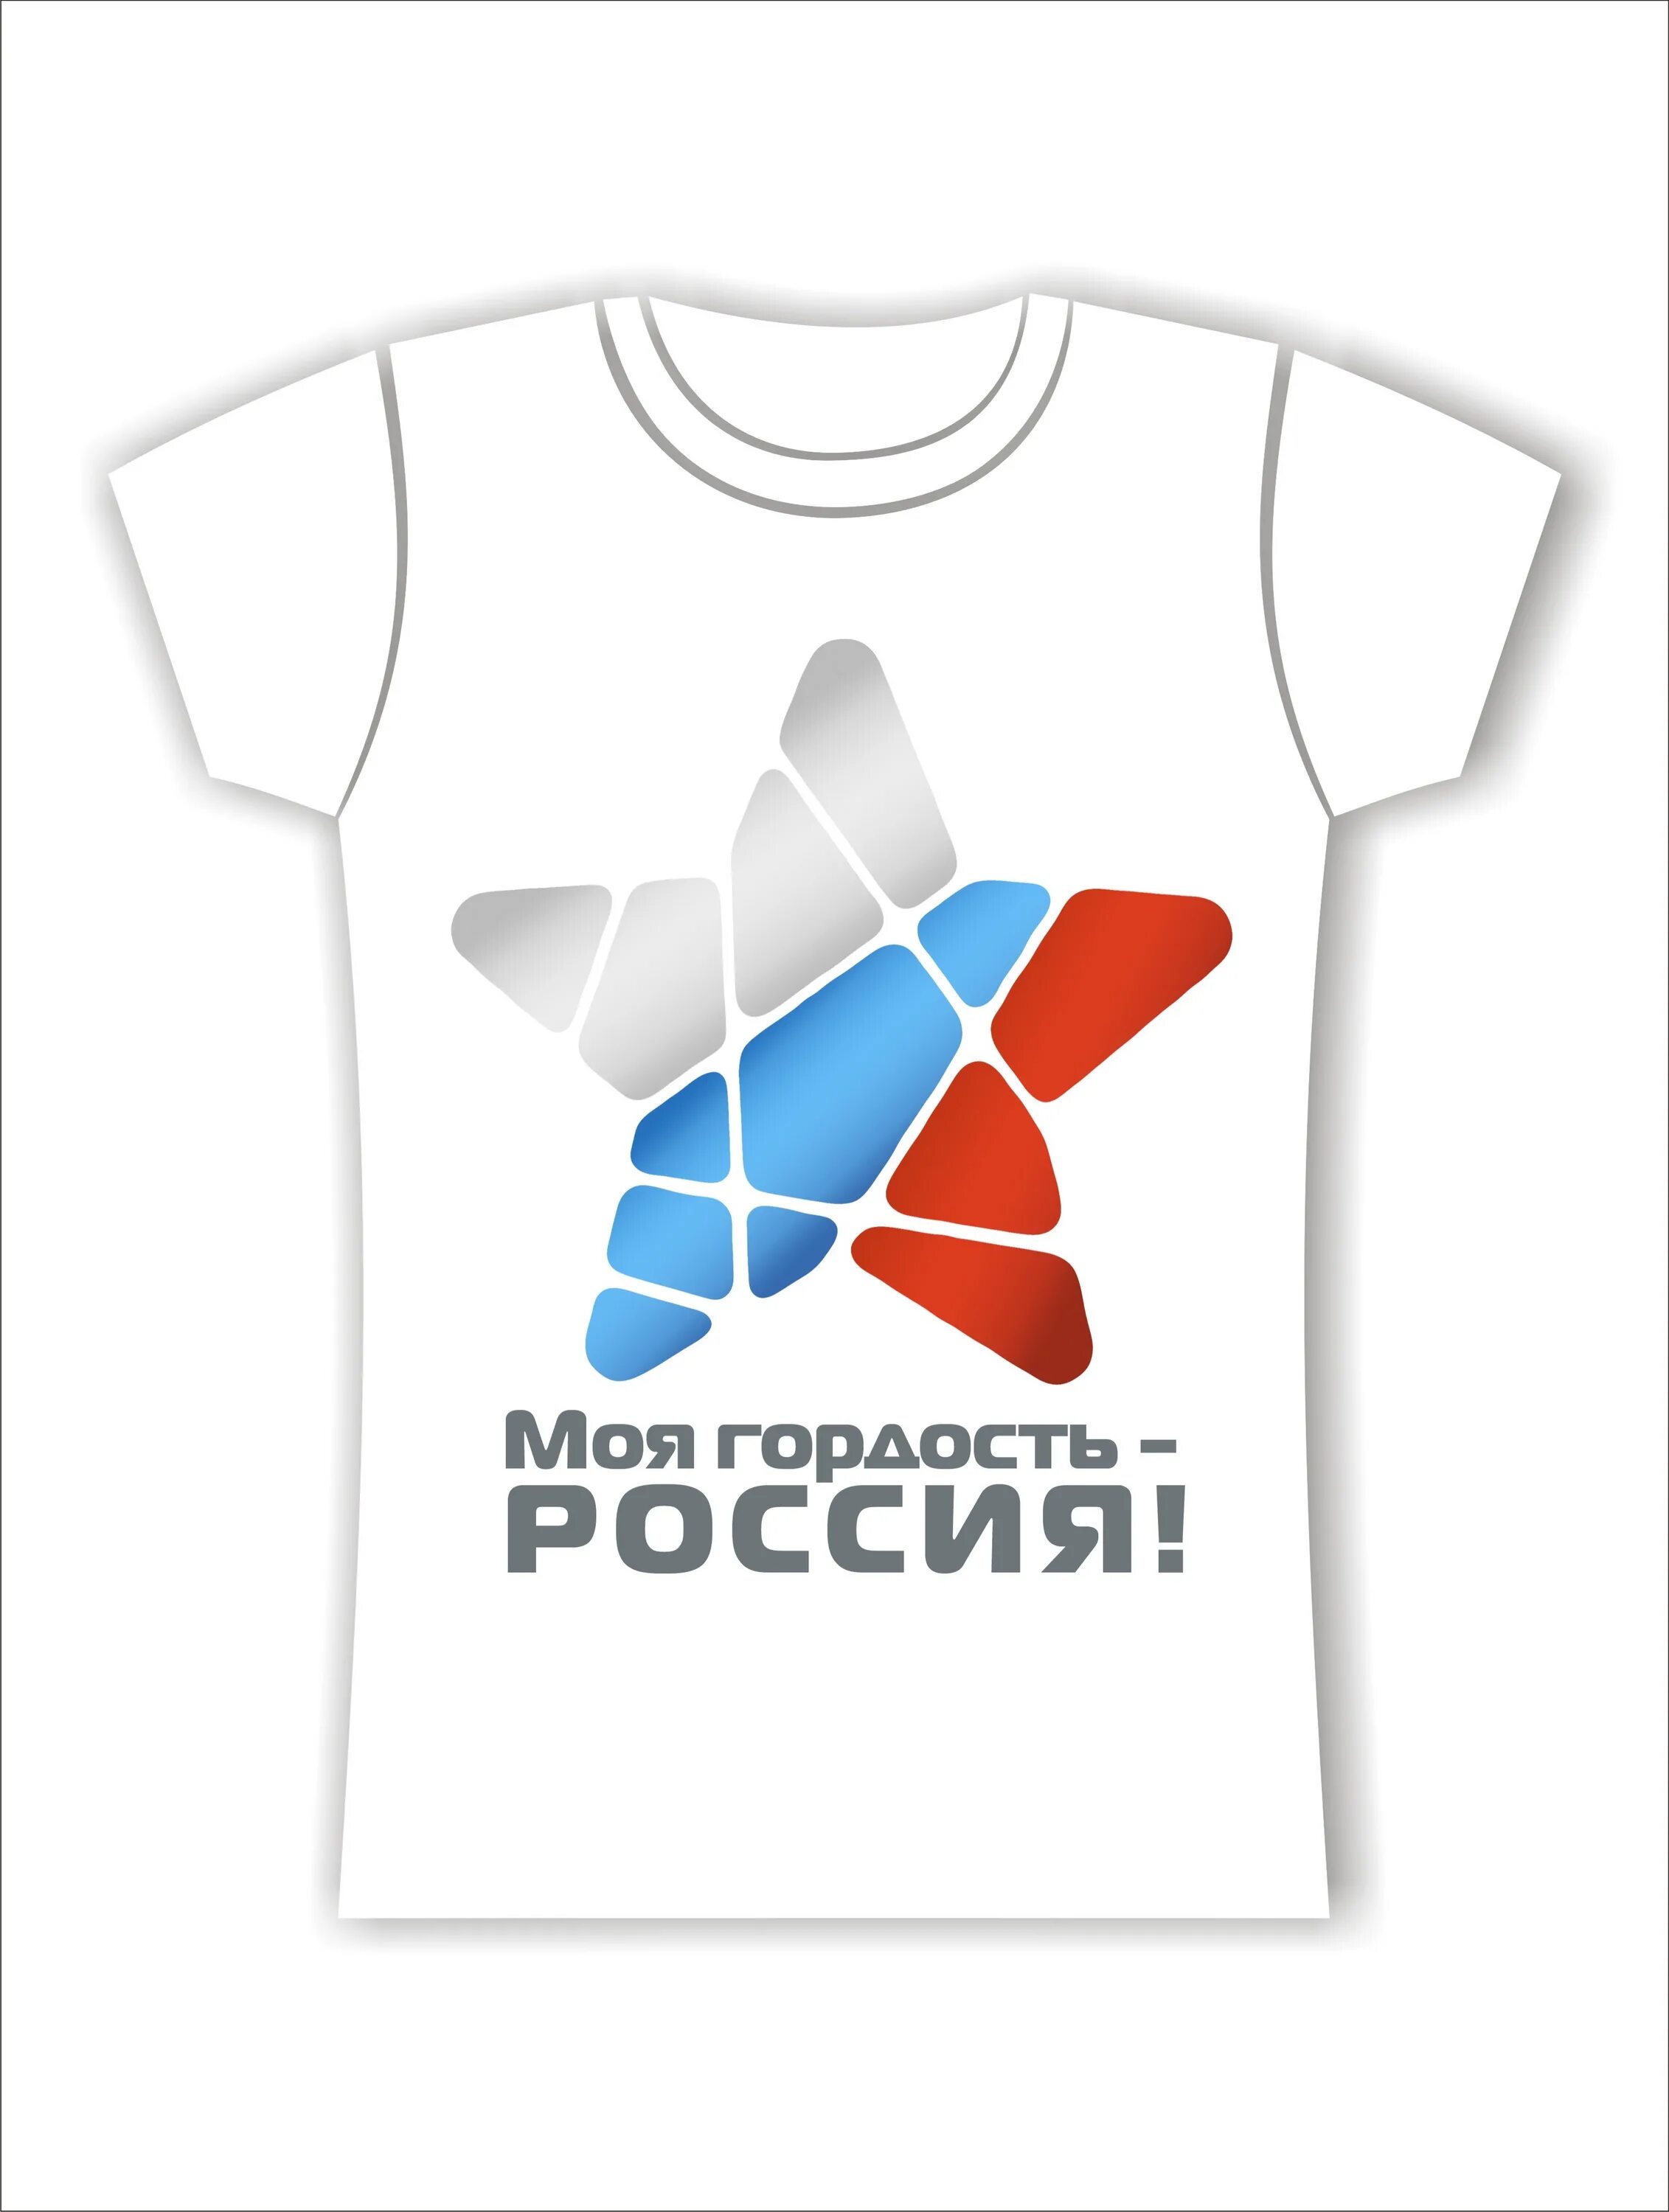 Радиогордость рф. Моя гордость Россия. Патриотический принт на футболку. Моя Россия моя гордость. Футболка с патриотическим принтом.